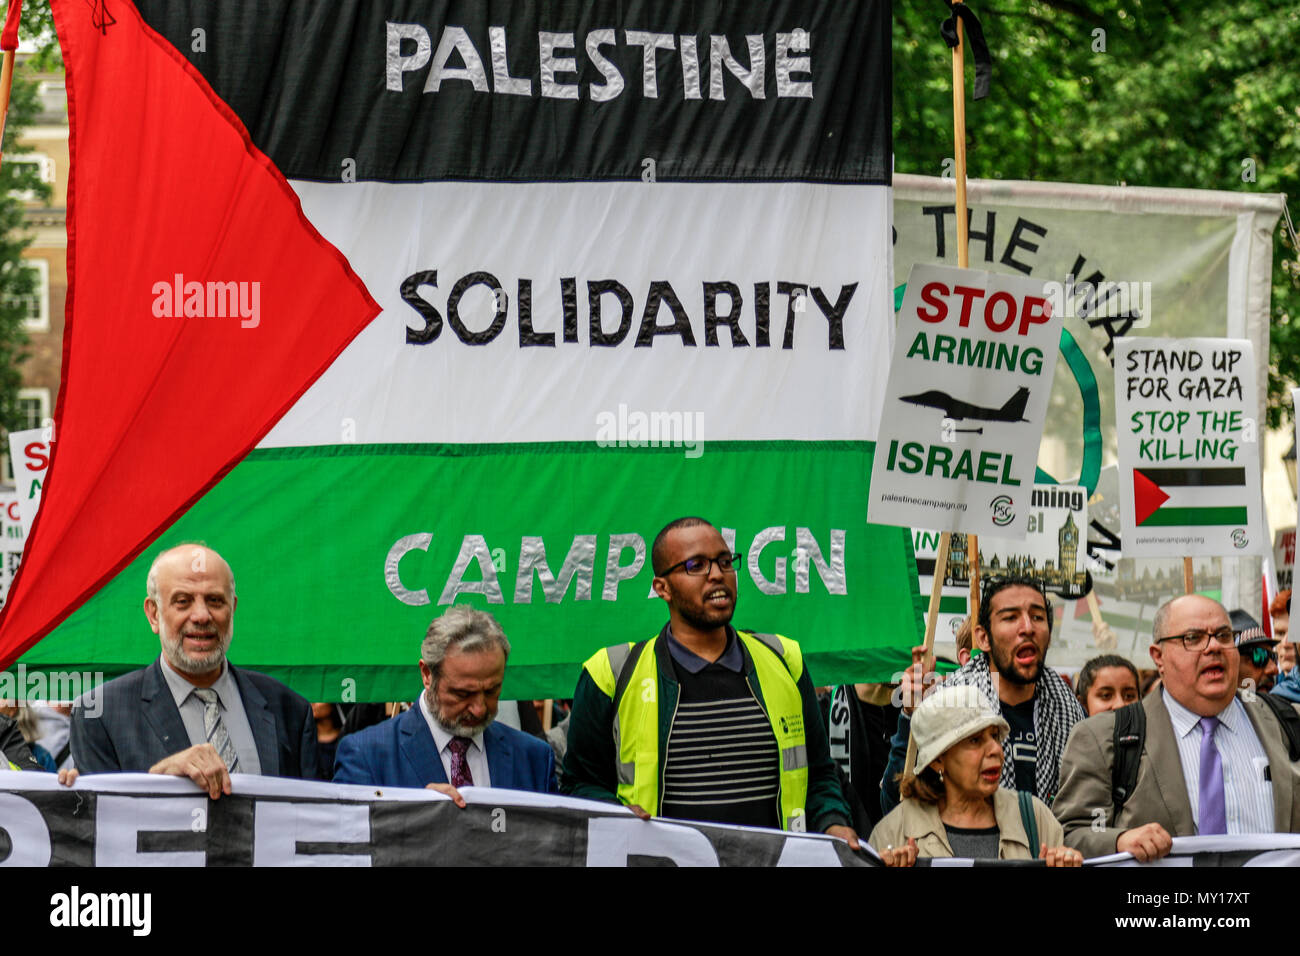 Londres, Angleterre. 5 juin, 2018. Campagne de solidarité palestinienne, Londres : manifestation de protestation de la Palestine - Arrêtons le massacre - Arrêter d'armer Israël. Crédit : Brian Duffy/Alamy Live News Banque D'Images